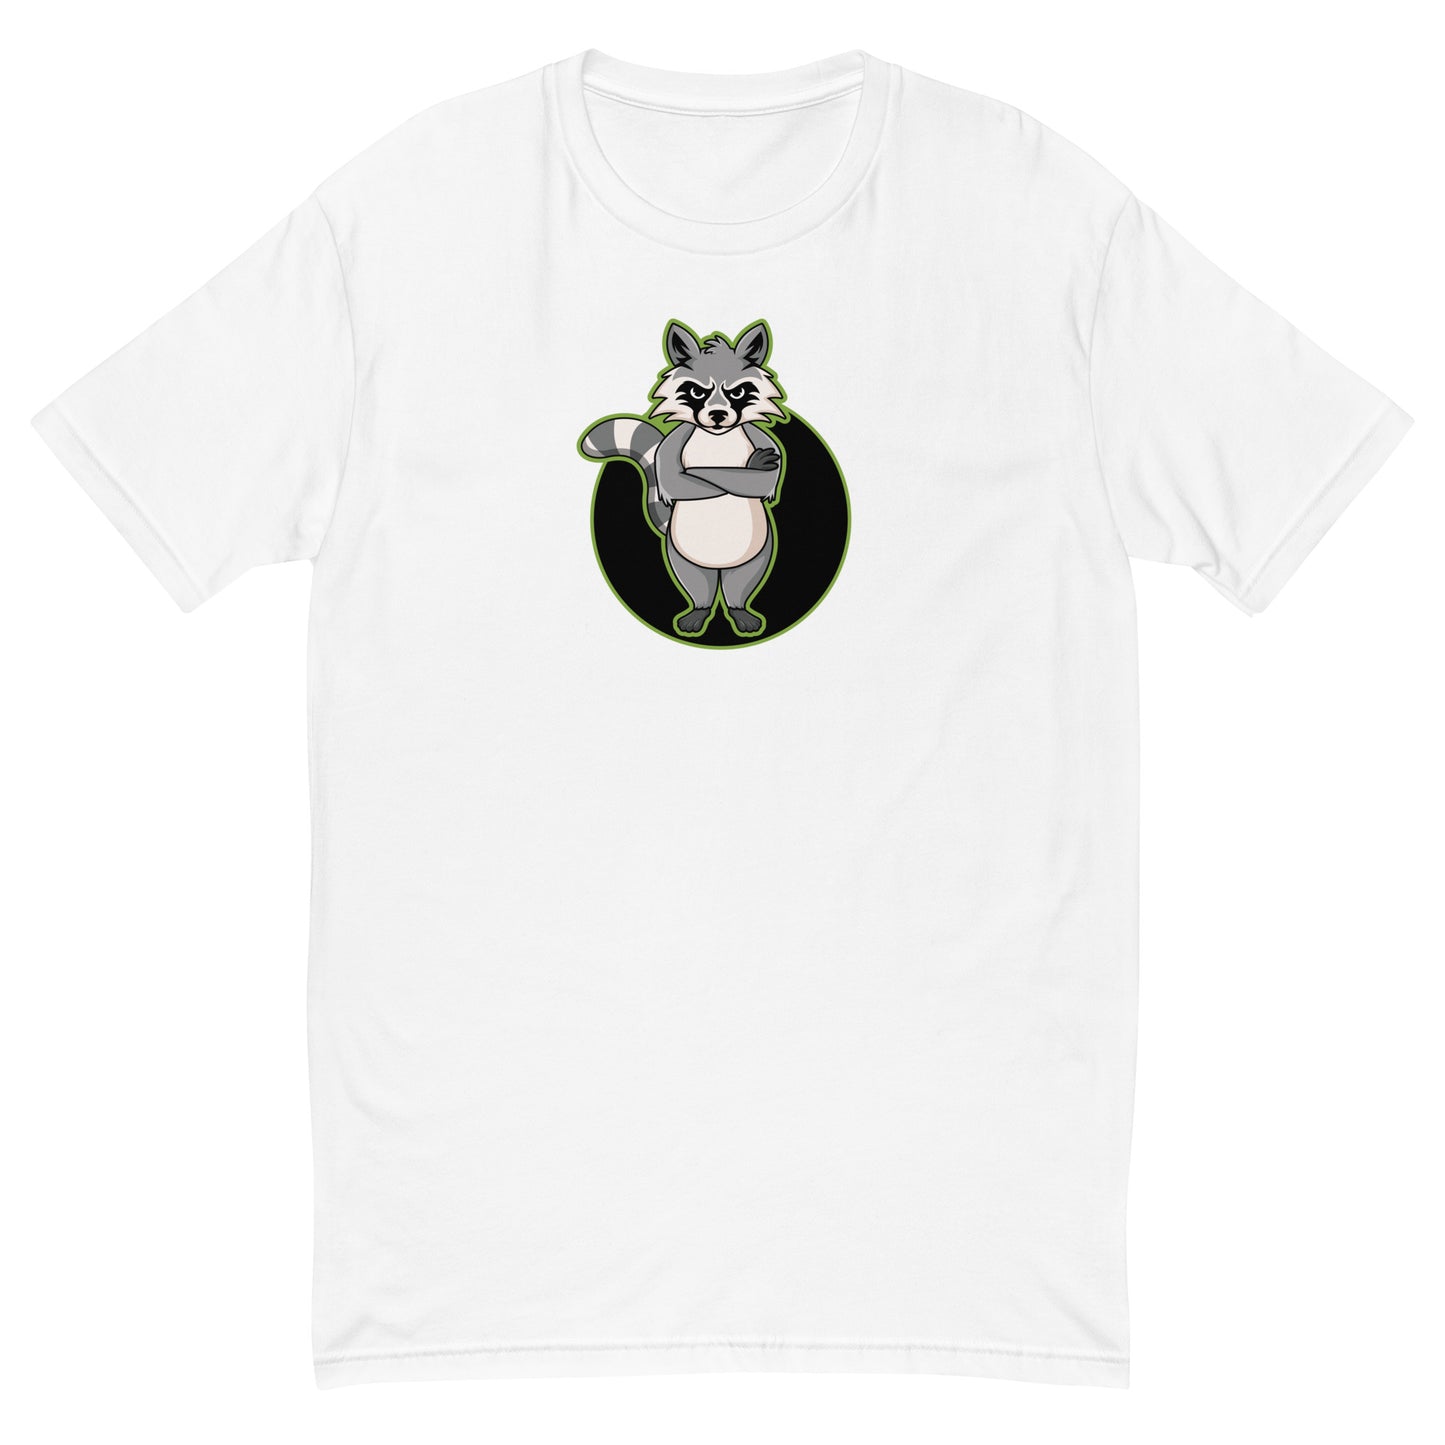 Trash Panda Short Sleeve T-shirt